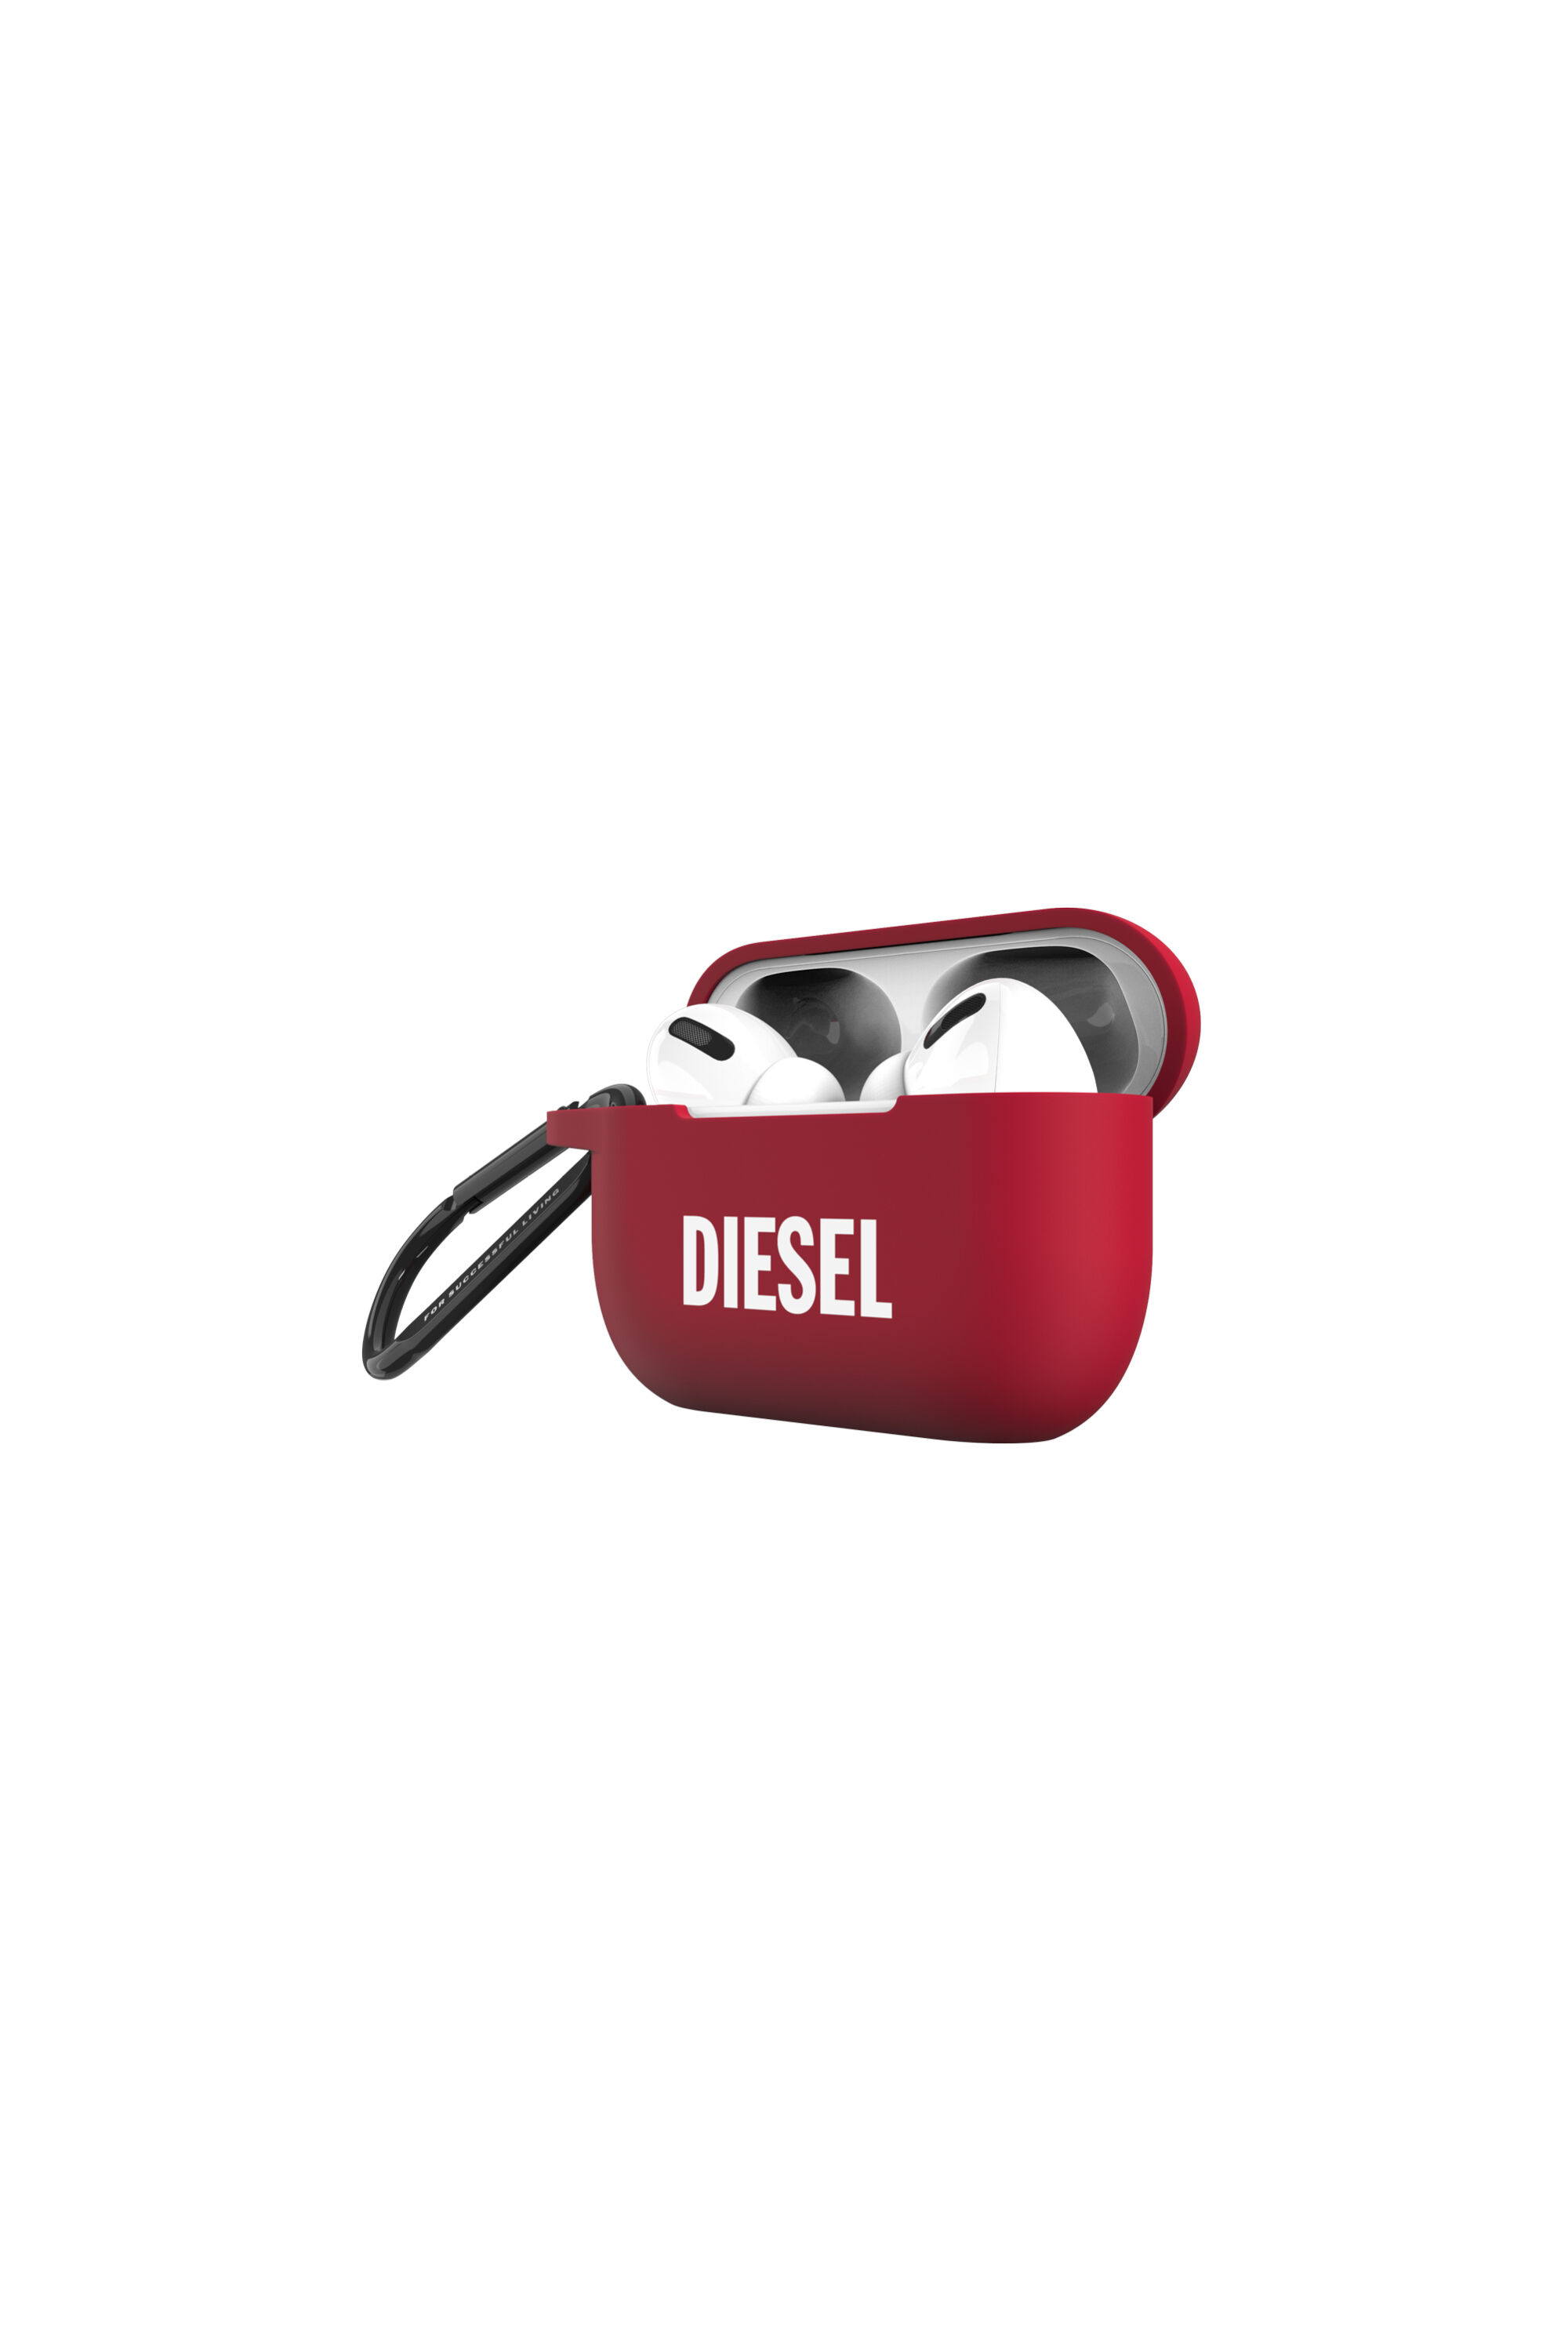 Diesel - 45837 AIRPOD CASE,  - Image 3